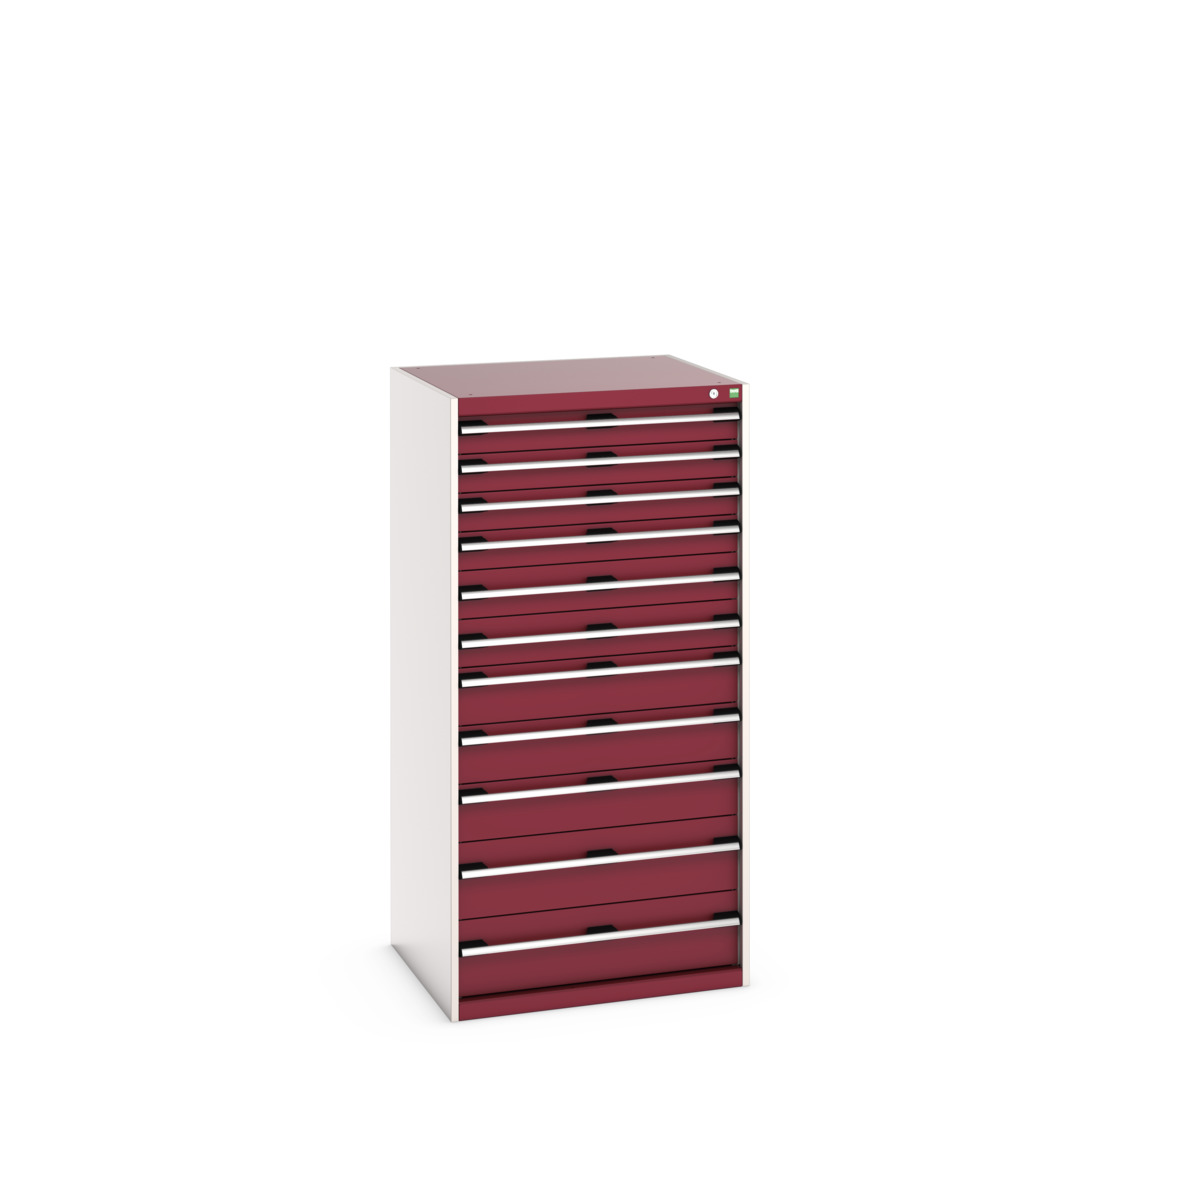 40028041.24V - cubio drawer cabinet